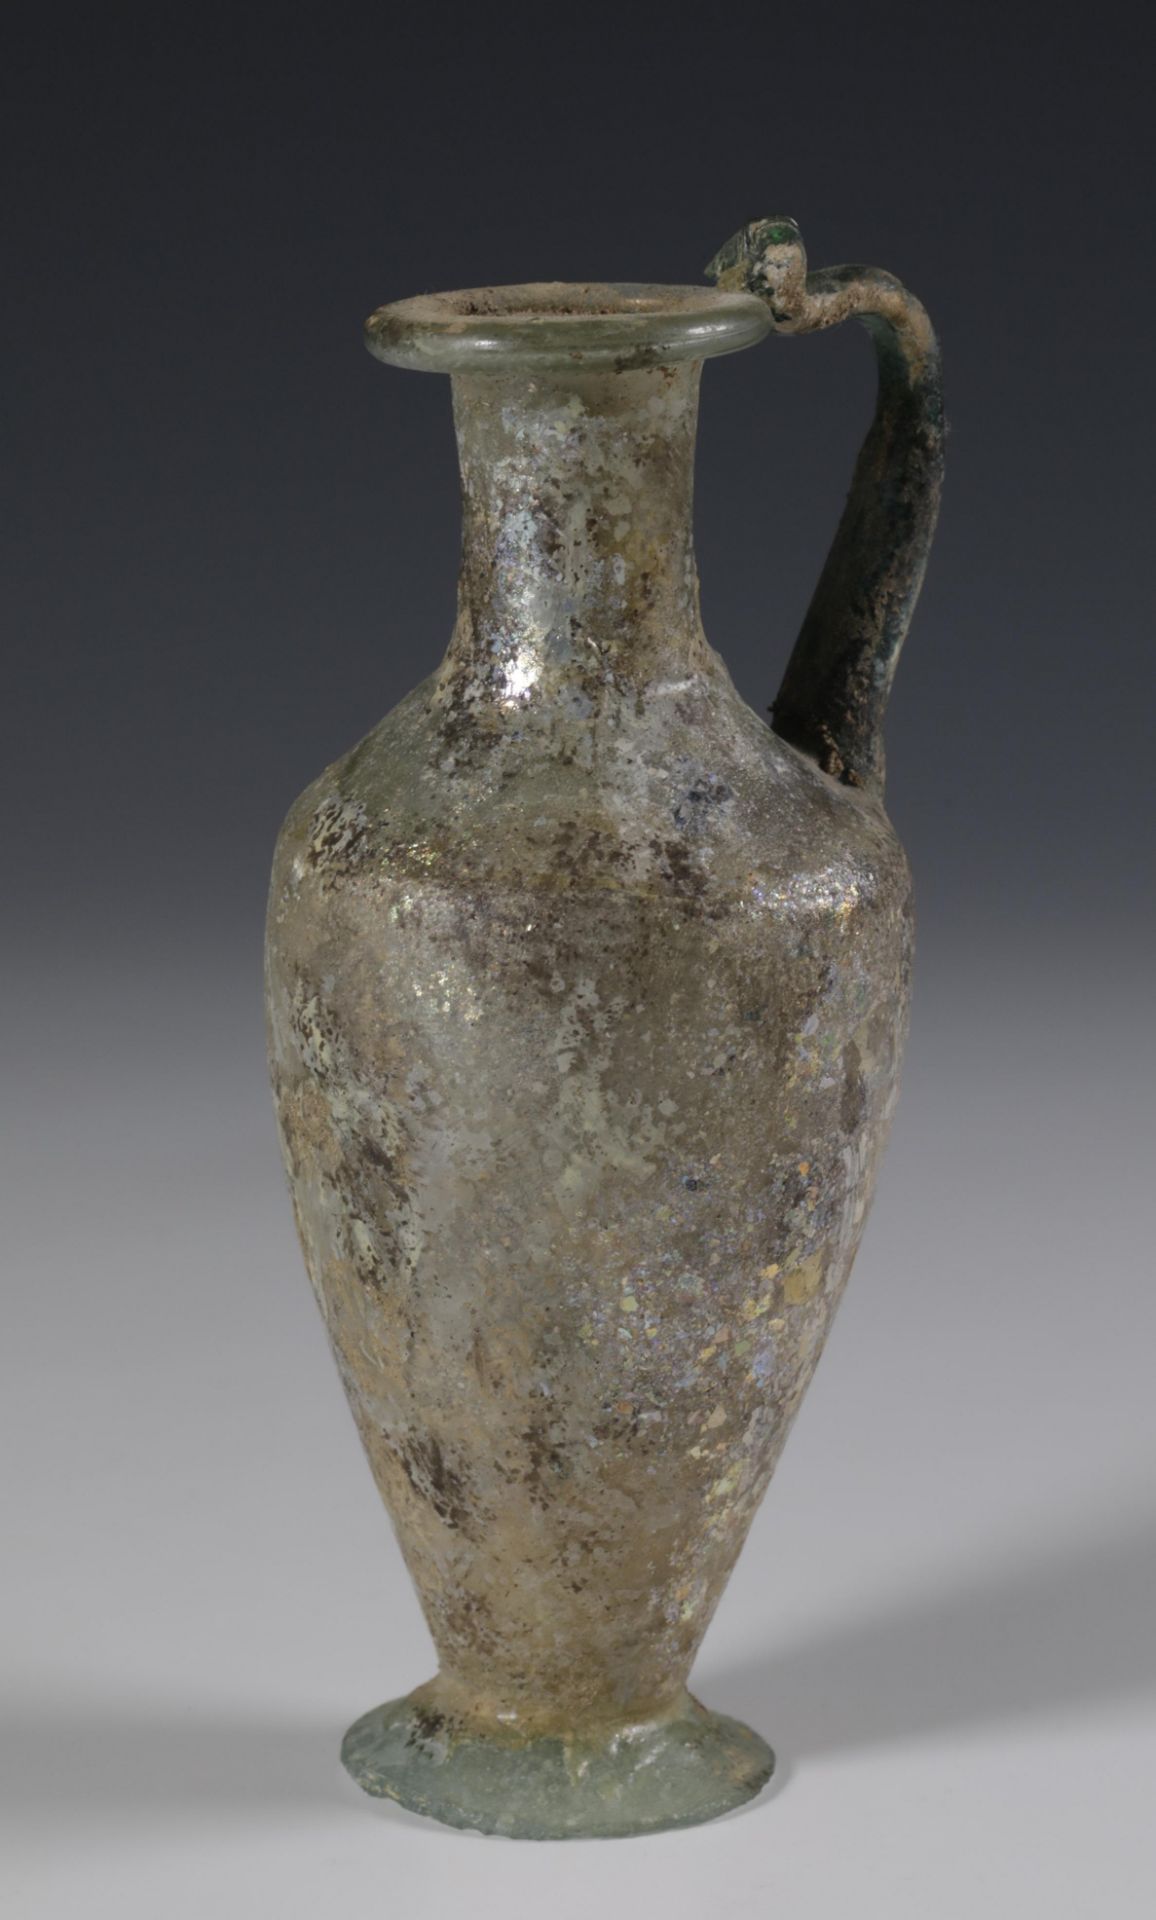 A fine Roman glass flacon, ca. 3rd-4th century